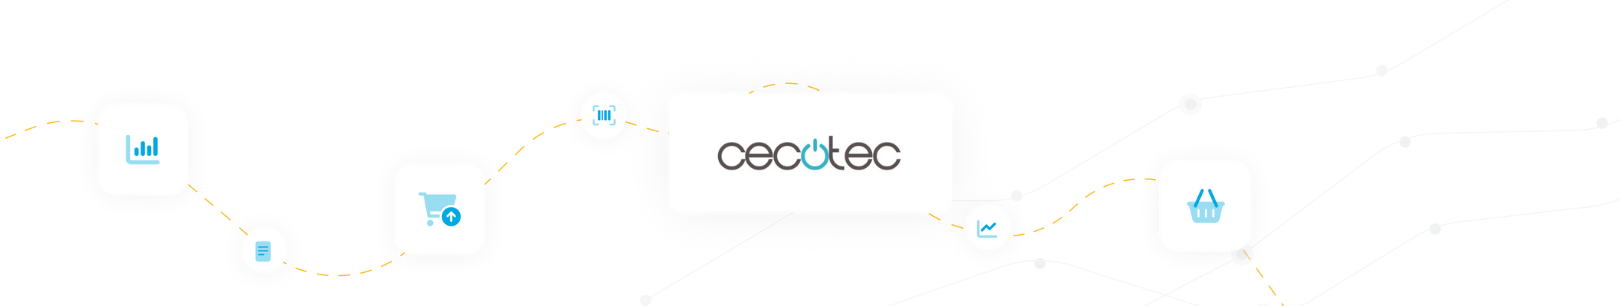 Case-study-CECOTEC-Minderest